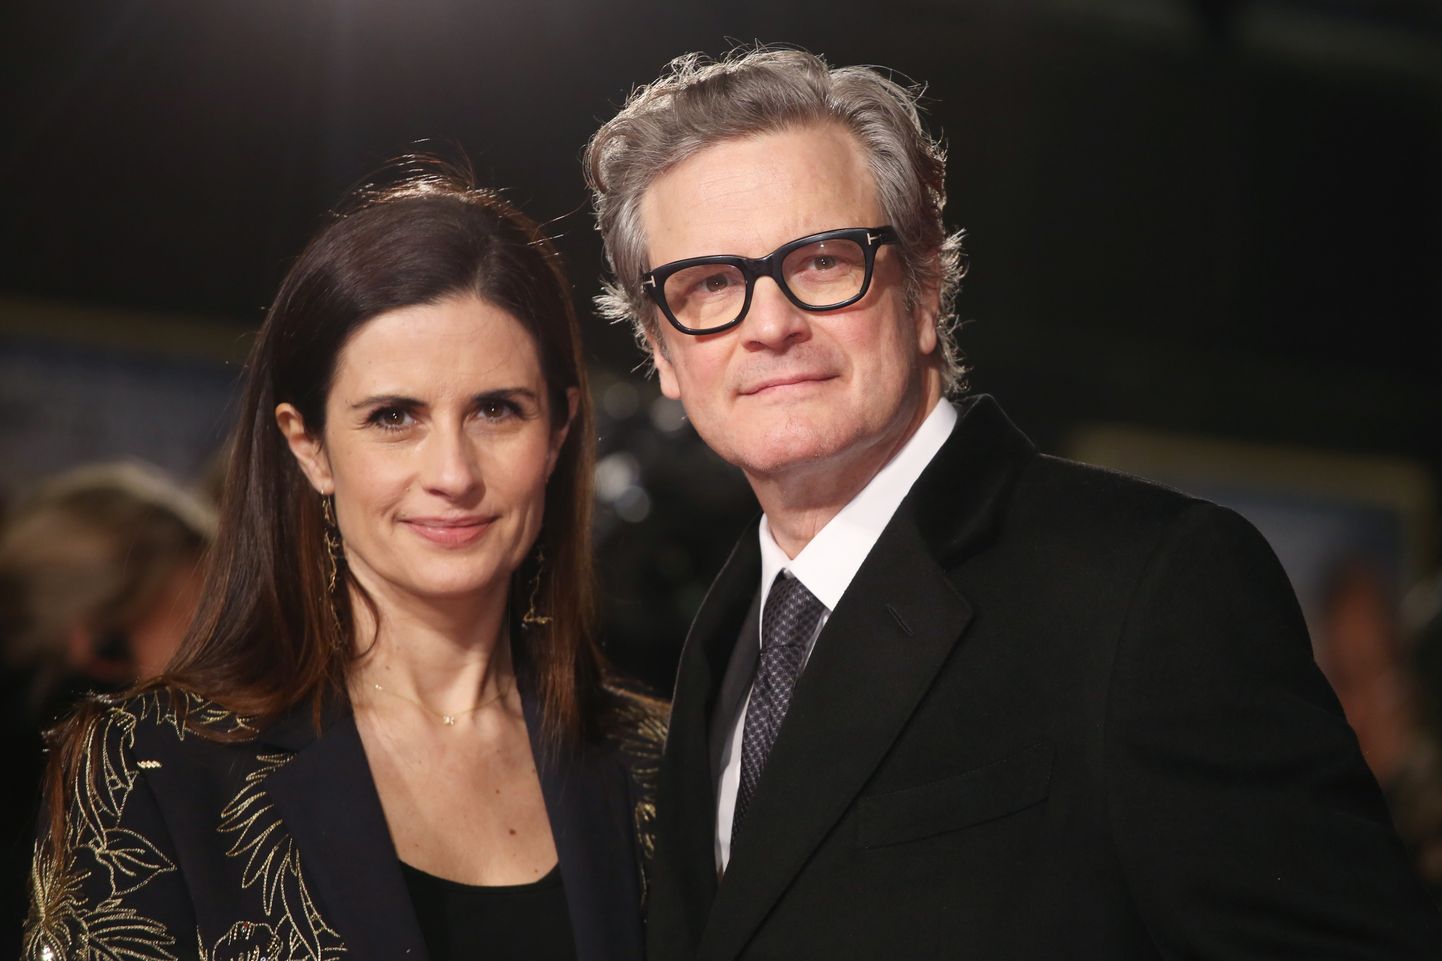 Colin Firth ja Livia Giuggioli on olnud koos 20 aastat ja neil on kaks last.